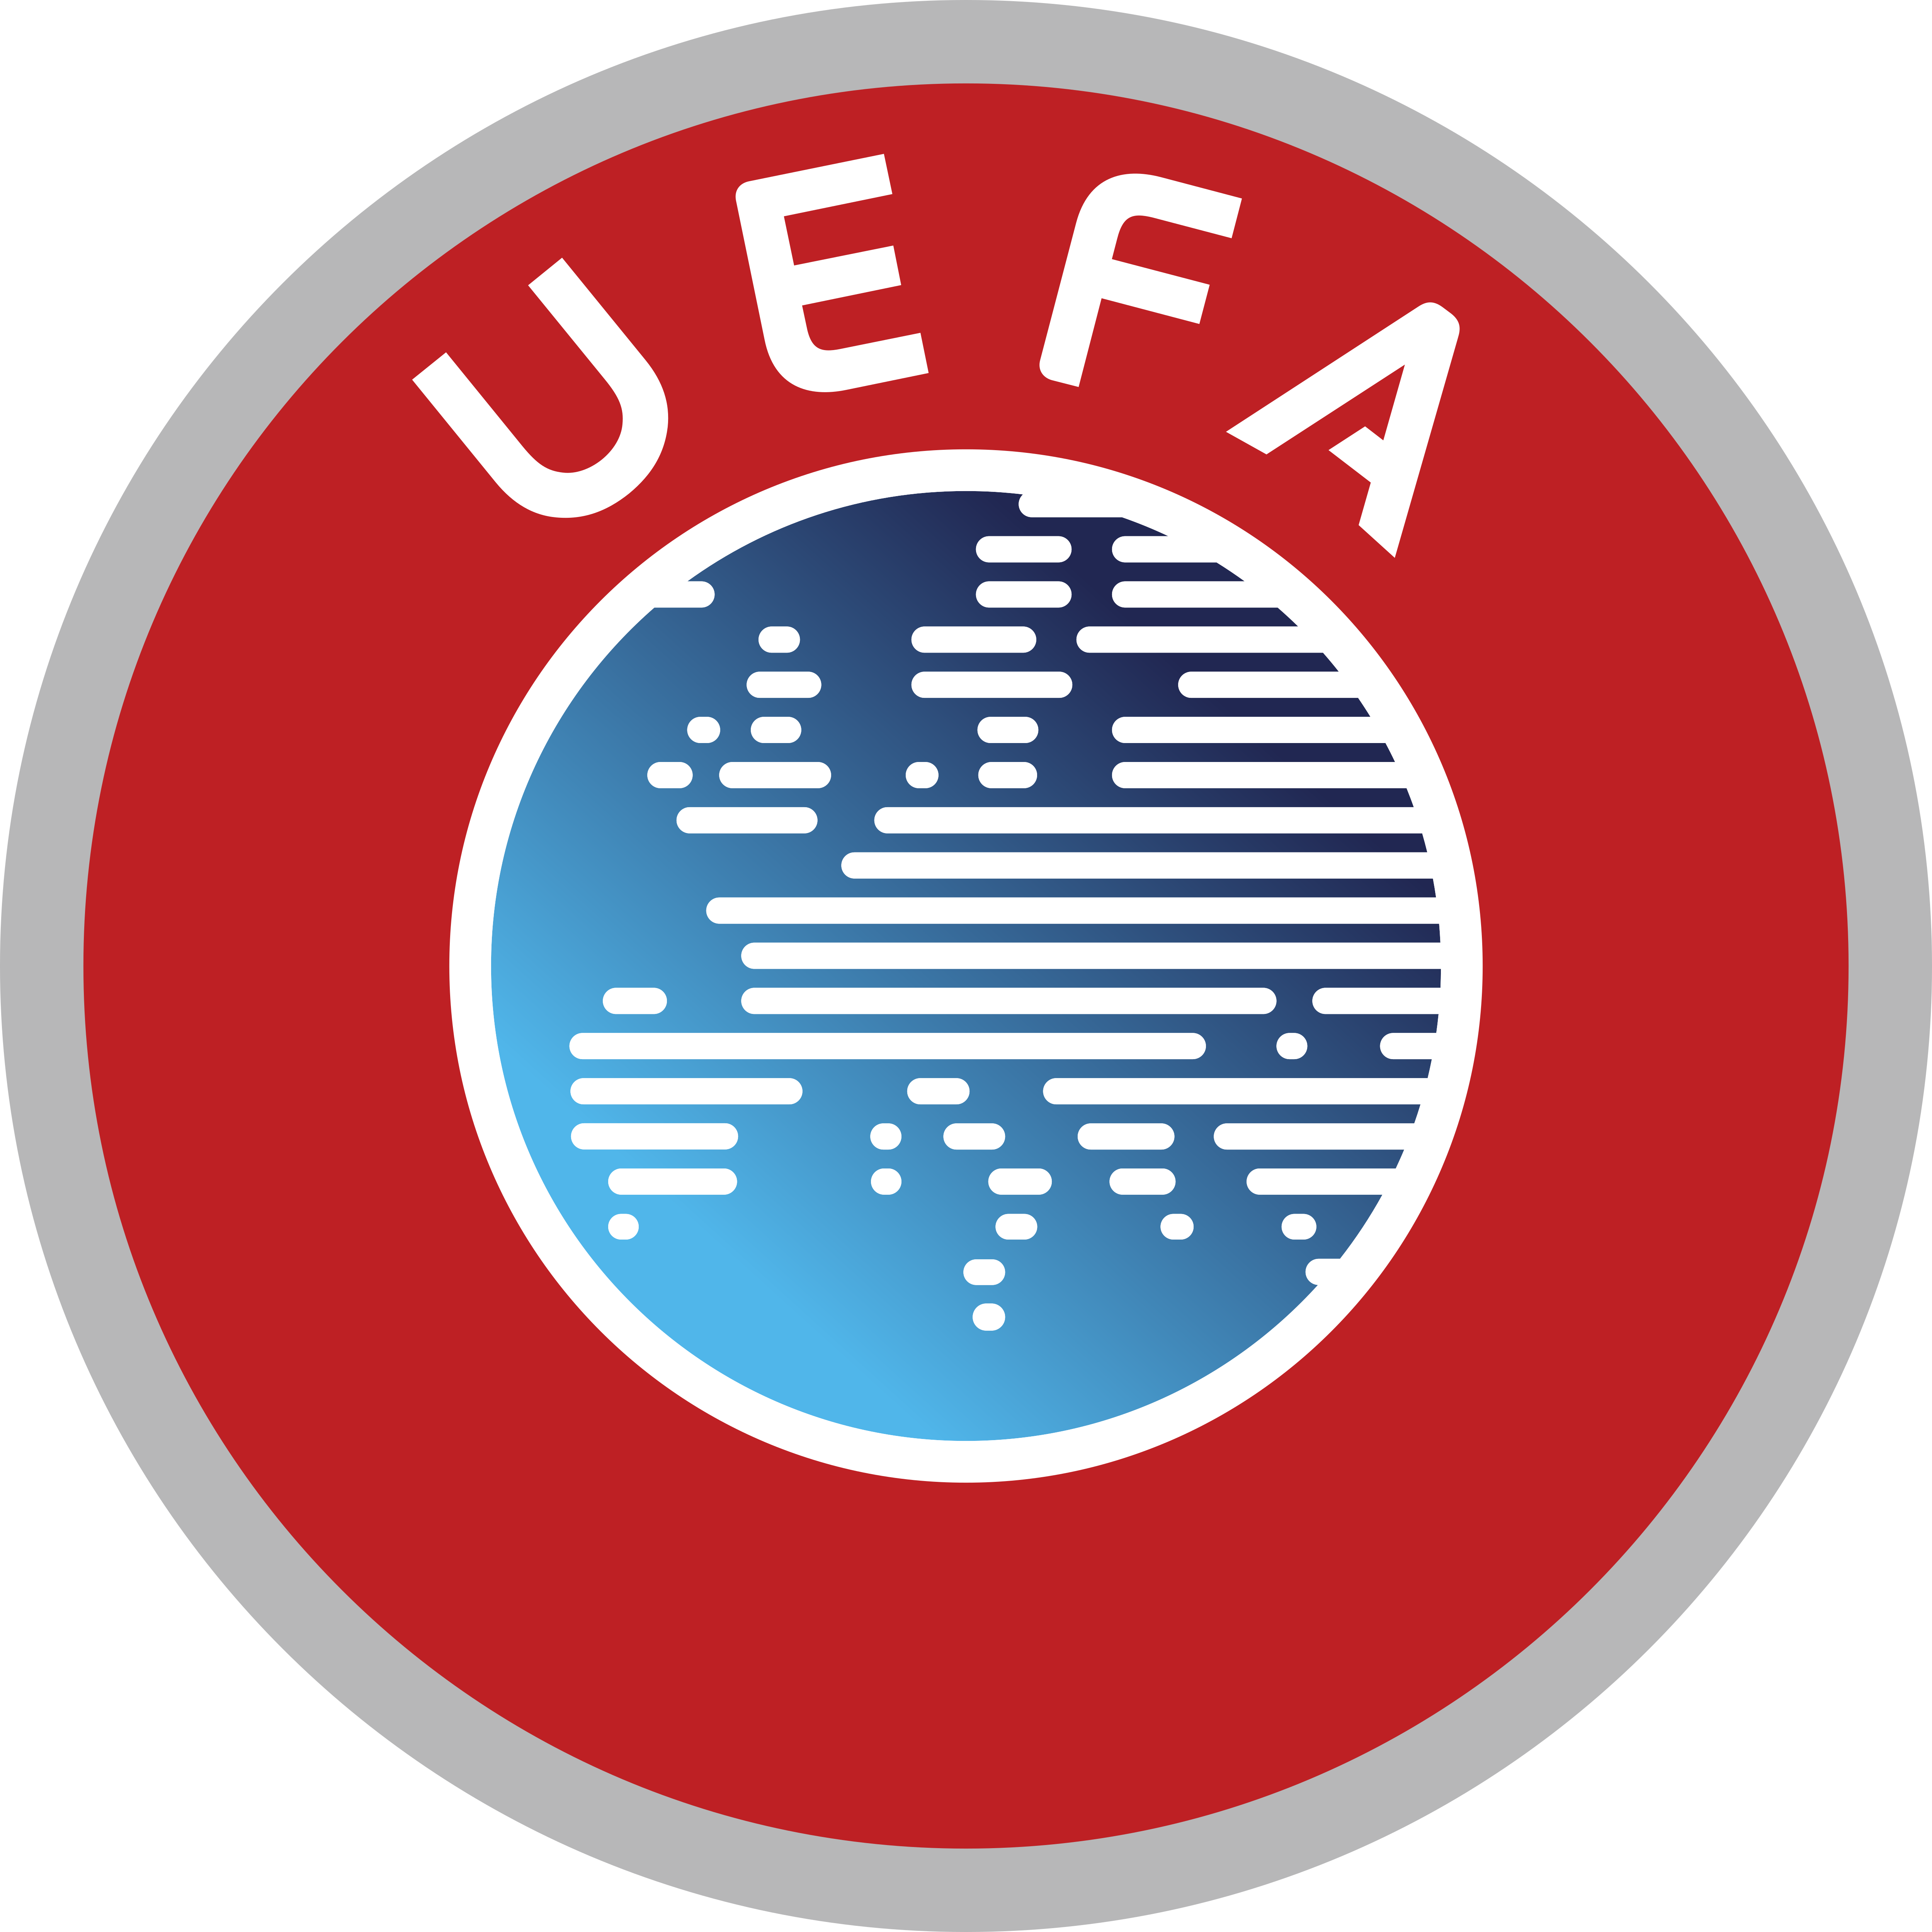 uefa logo png - Compra Online con Ofertas OFF65%